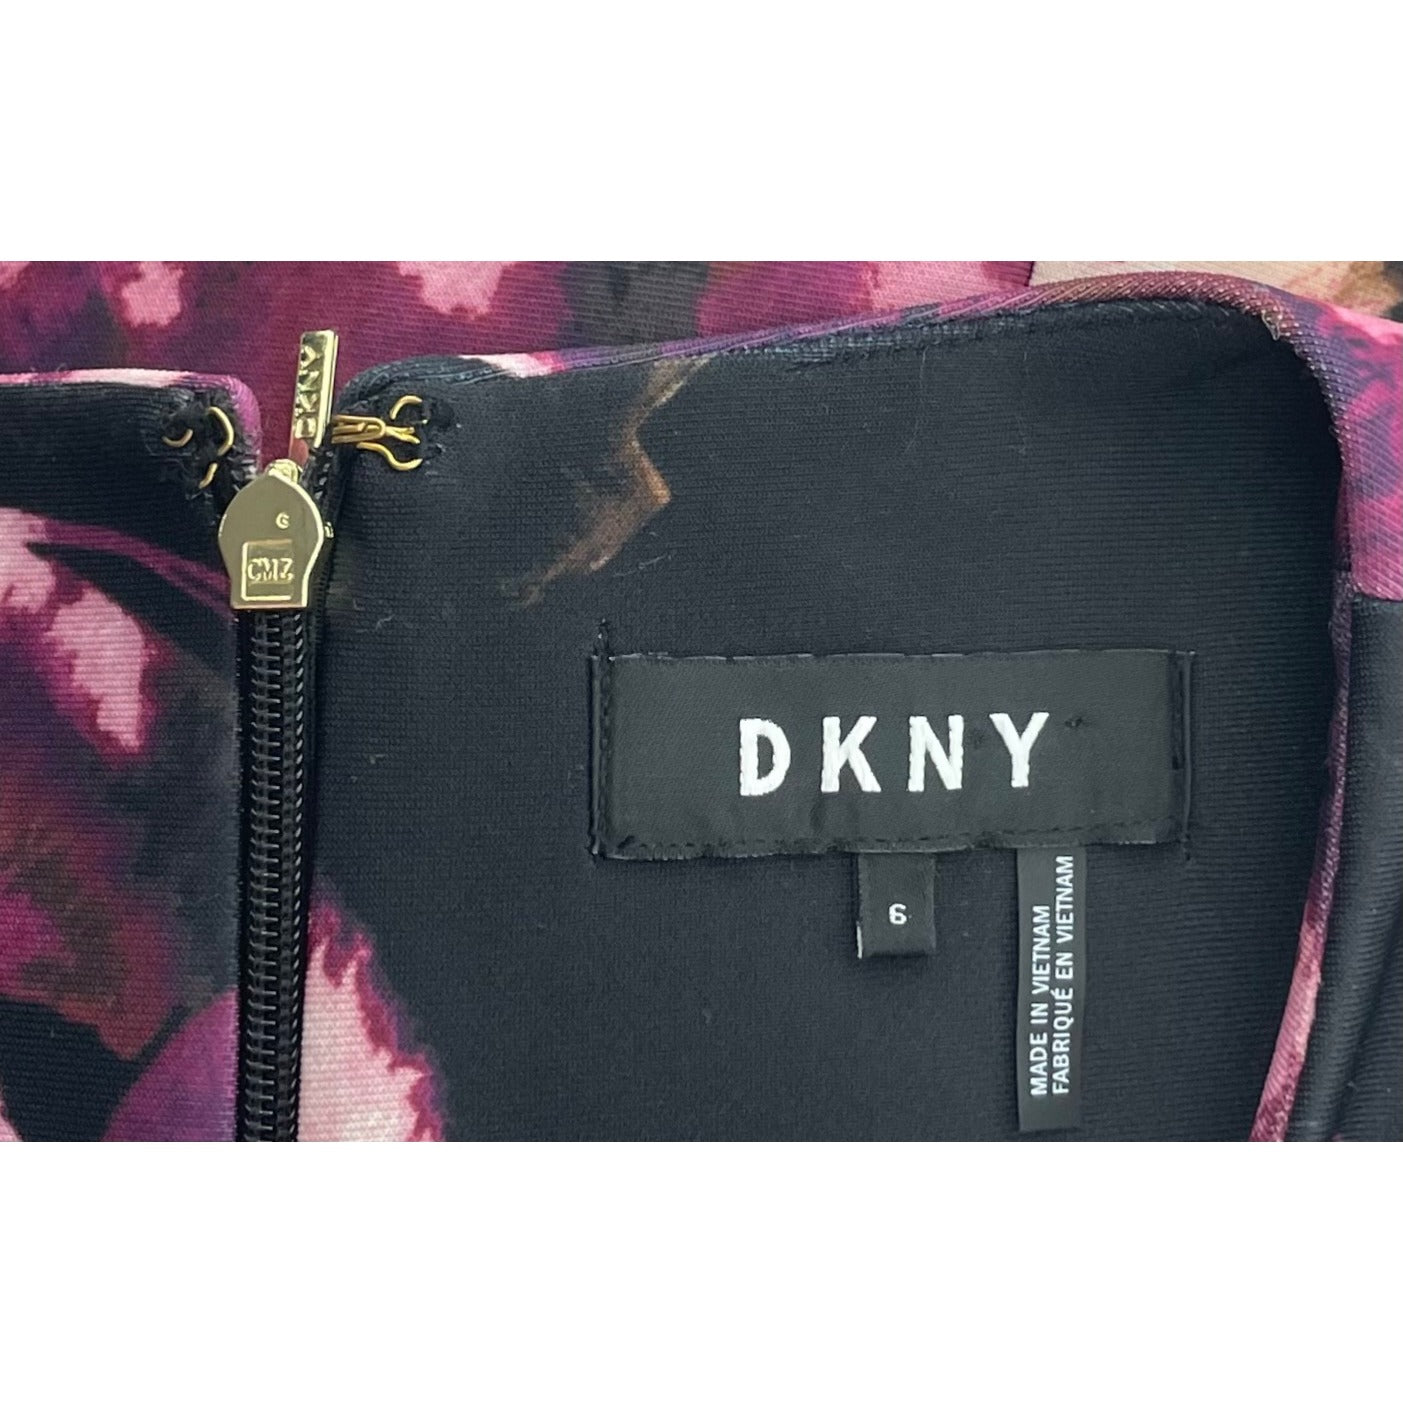 DKNY Women's Size 6 Purple/Brown/White/Black Floral A-Line Tank Dress